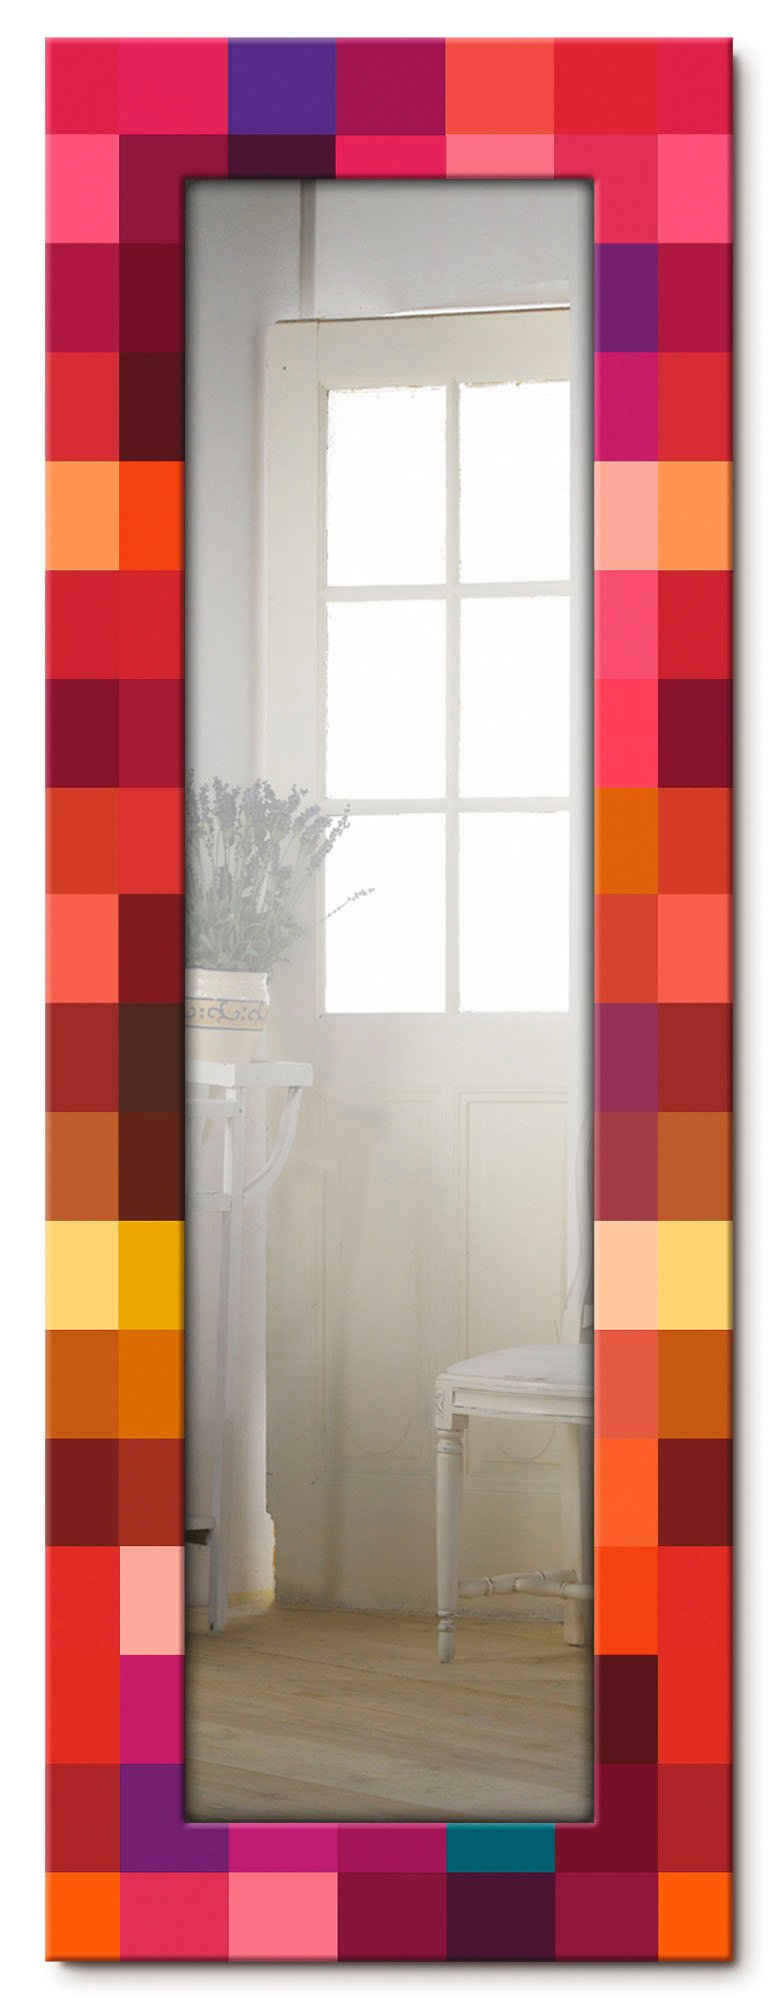 Artland Dekospiegel Patchwork rot, gerahmter Ganzkörperspiegel, Wandspiegel, mit Motivrahmen, Landhaus